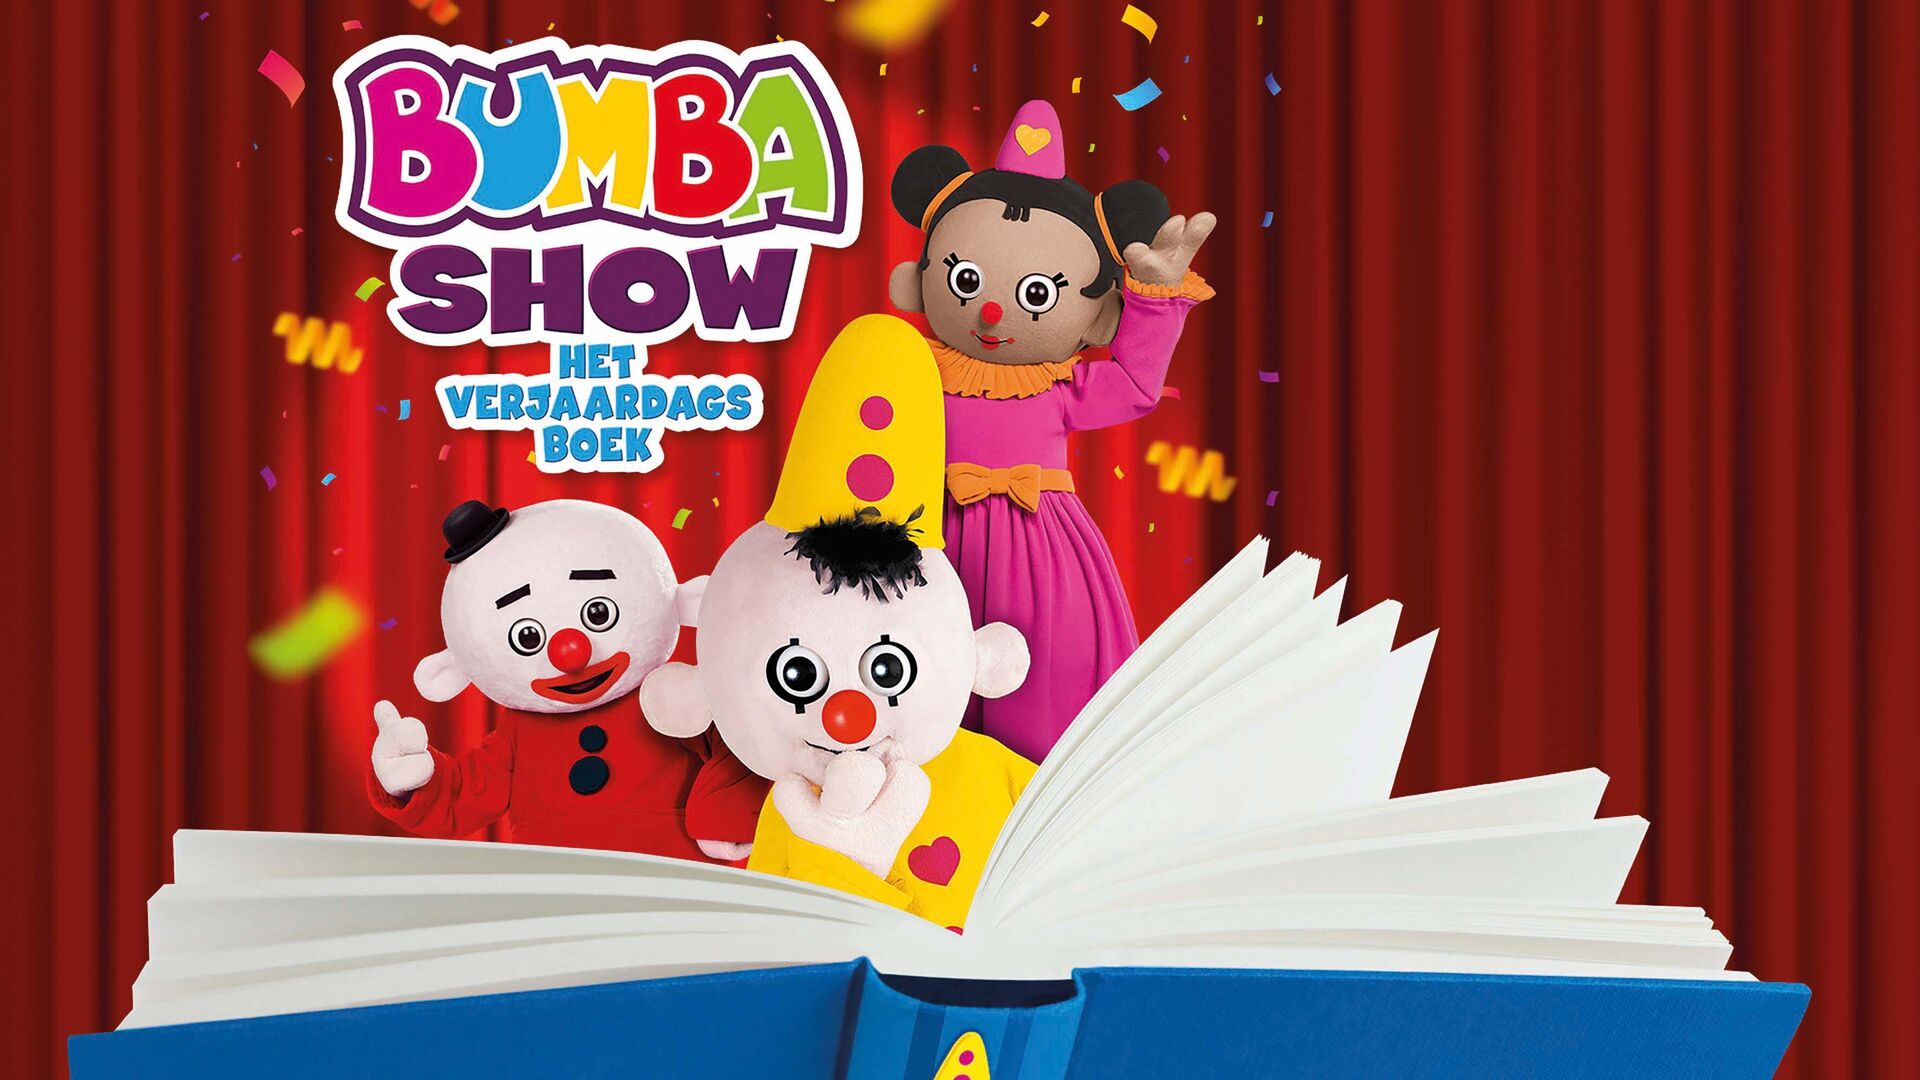 Bumba show – Het Verjaardagsboek 1+